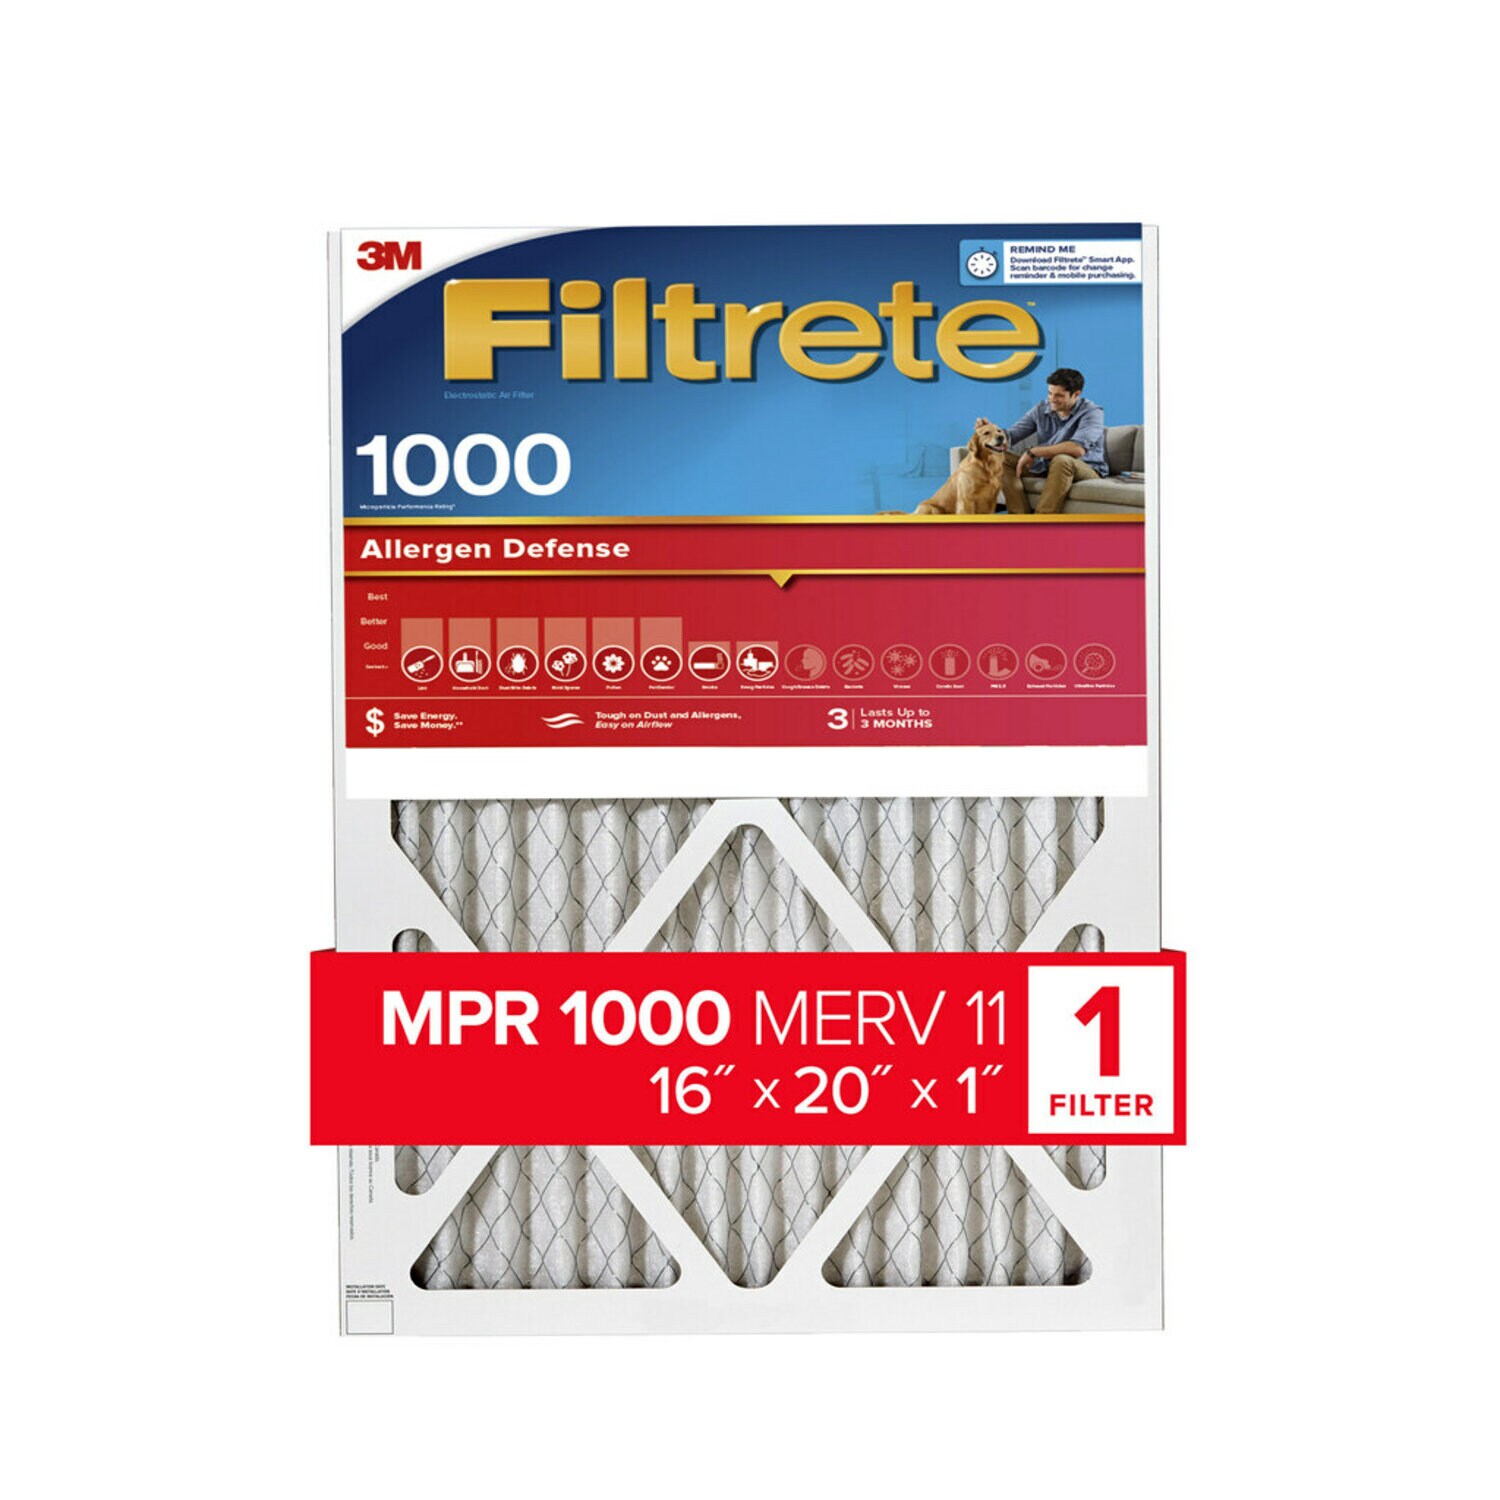 7100188265 - Filtrete Allergen Defense Air Filter, 1000 MPR, 9800-4, 16 in x 20 in x
1 in (40,6 cm x 50,8 cm x 2,5 cm)